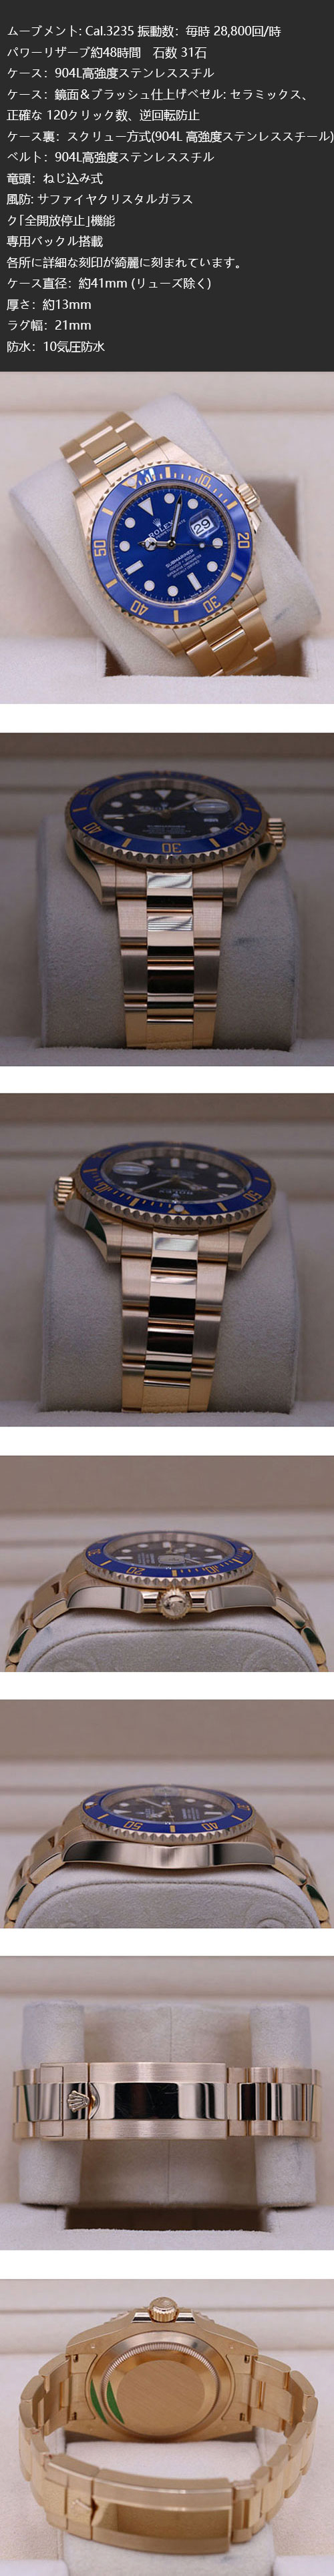 ロレックスコピー時計 サブマリーナー デイト 126618LB 41mm 時計の紹介